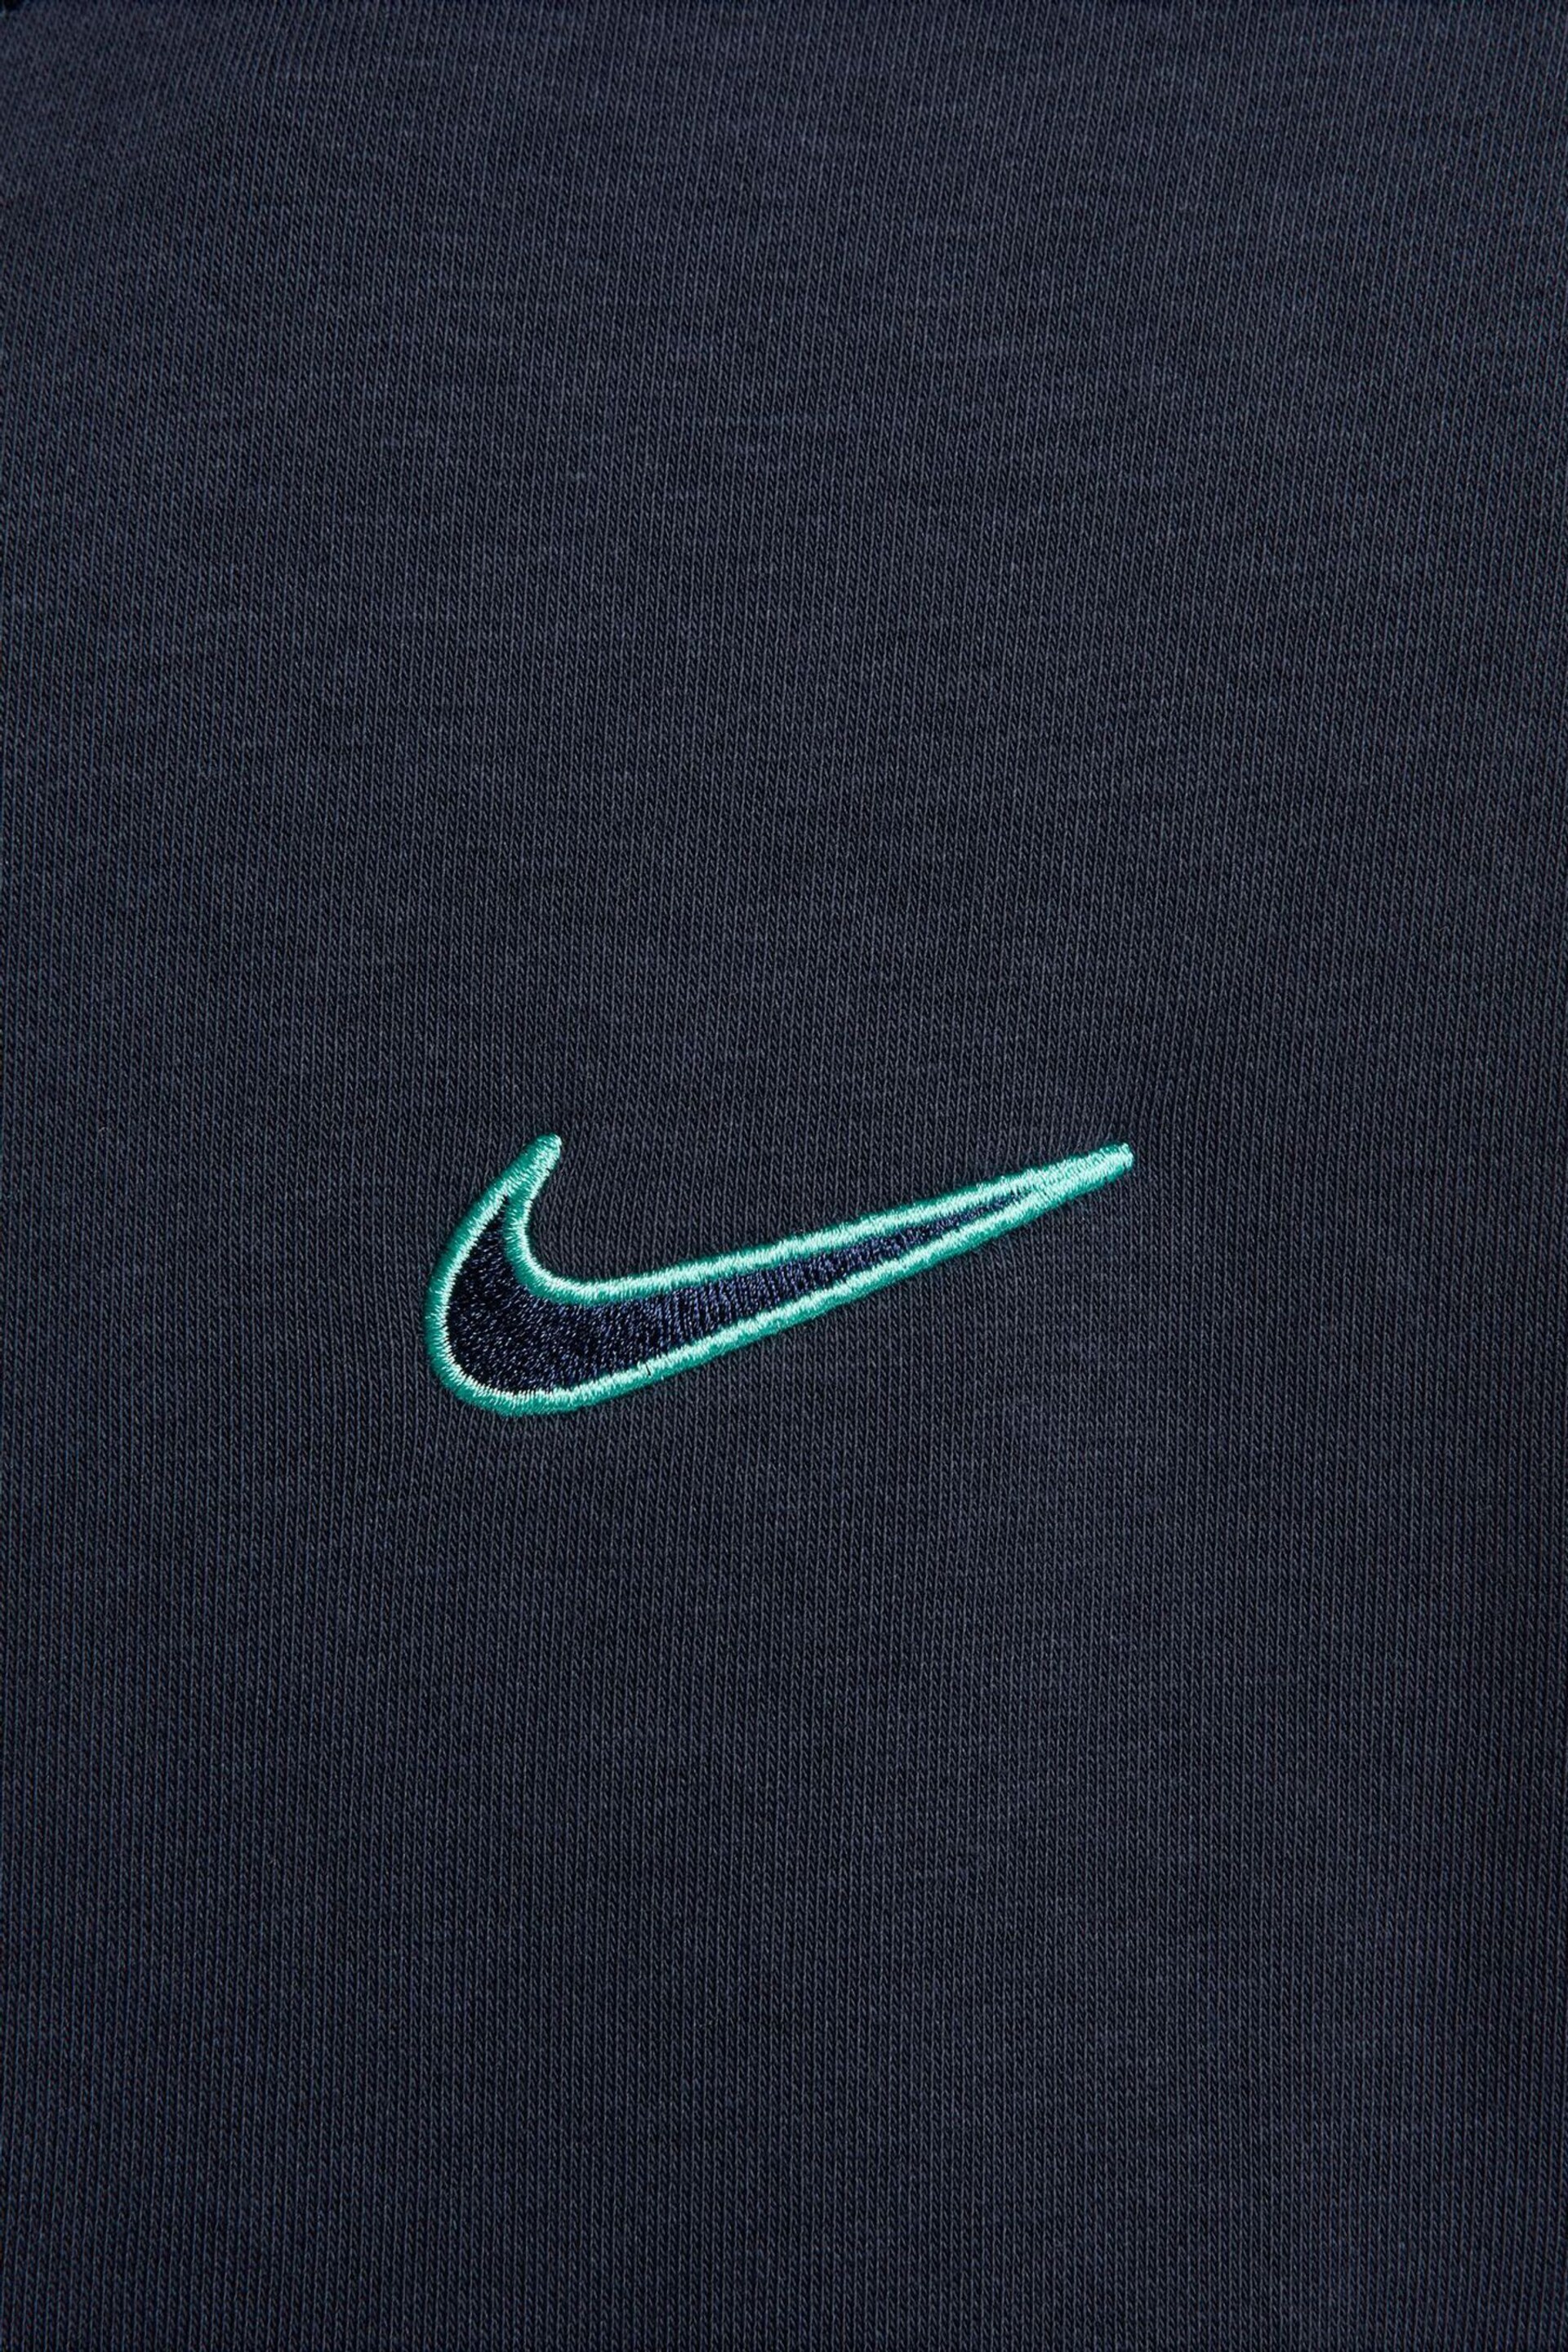 Nike Navy Sportswear Shoulder Blocking Hoodie - Image 7 of 7